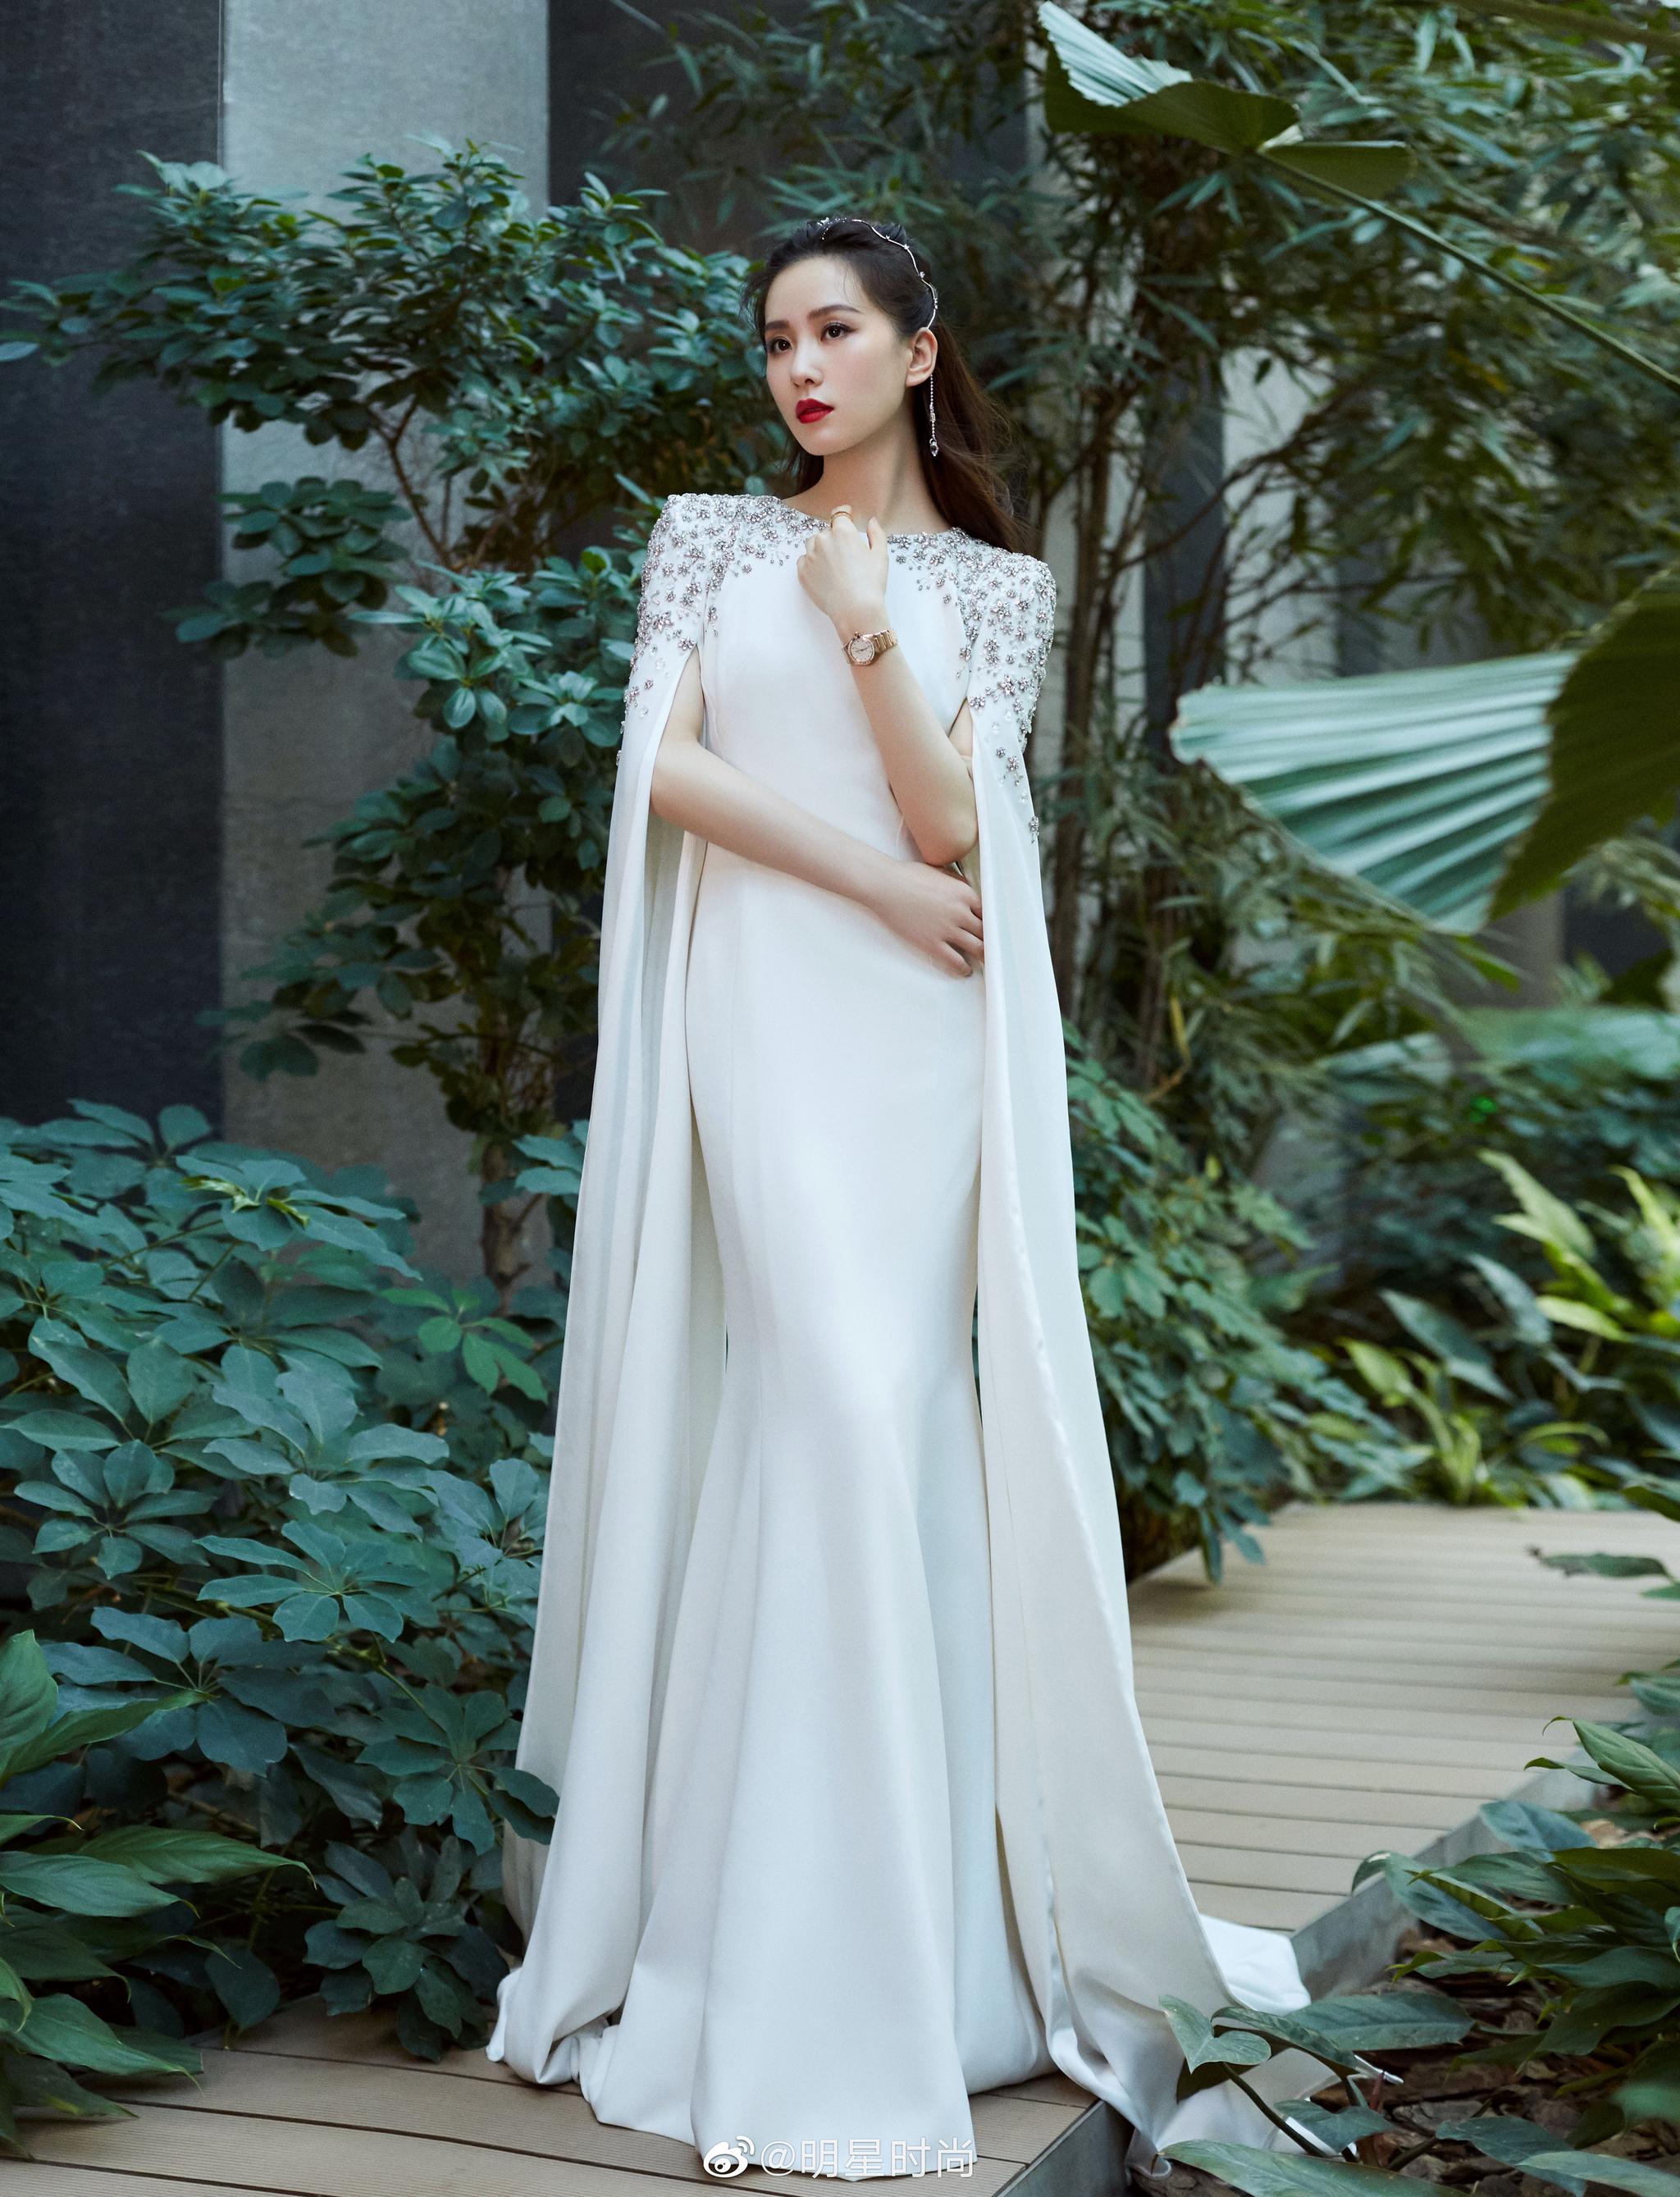 刘诗诗活动造型一袭白色长裙搭配肩部亮钻点缀闪耀迷人